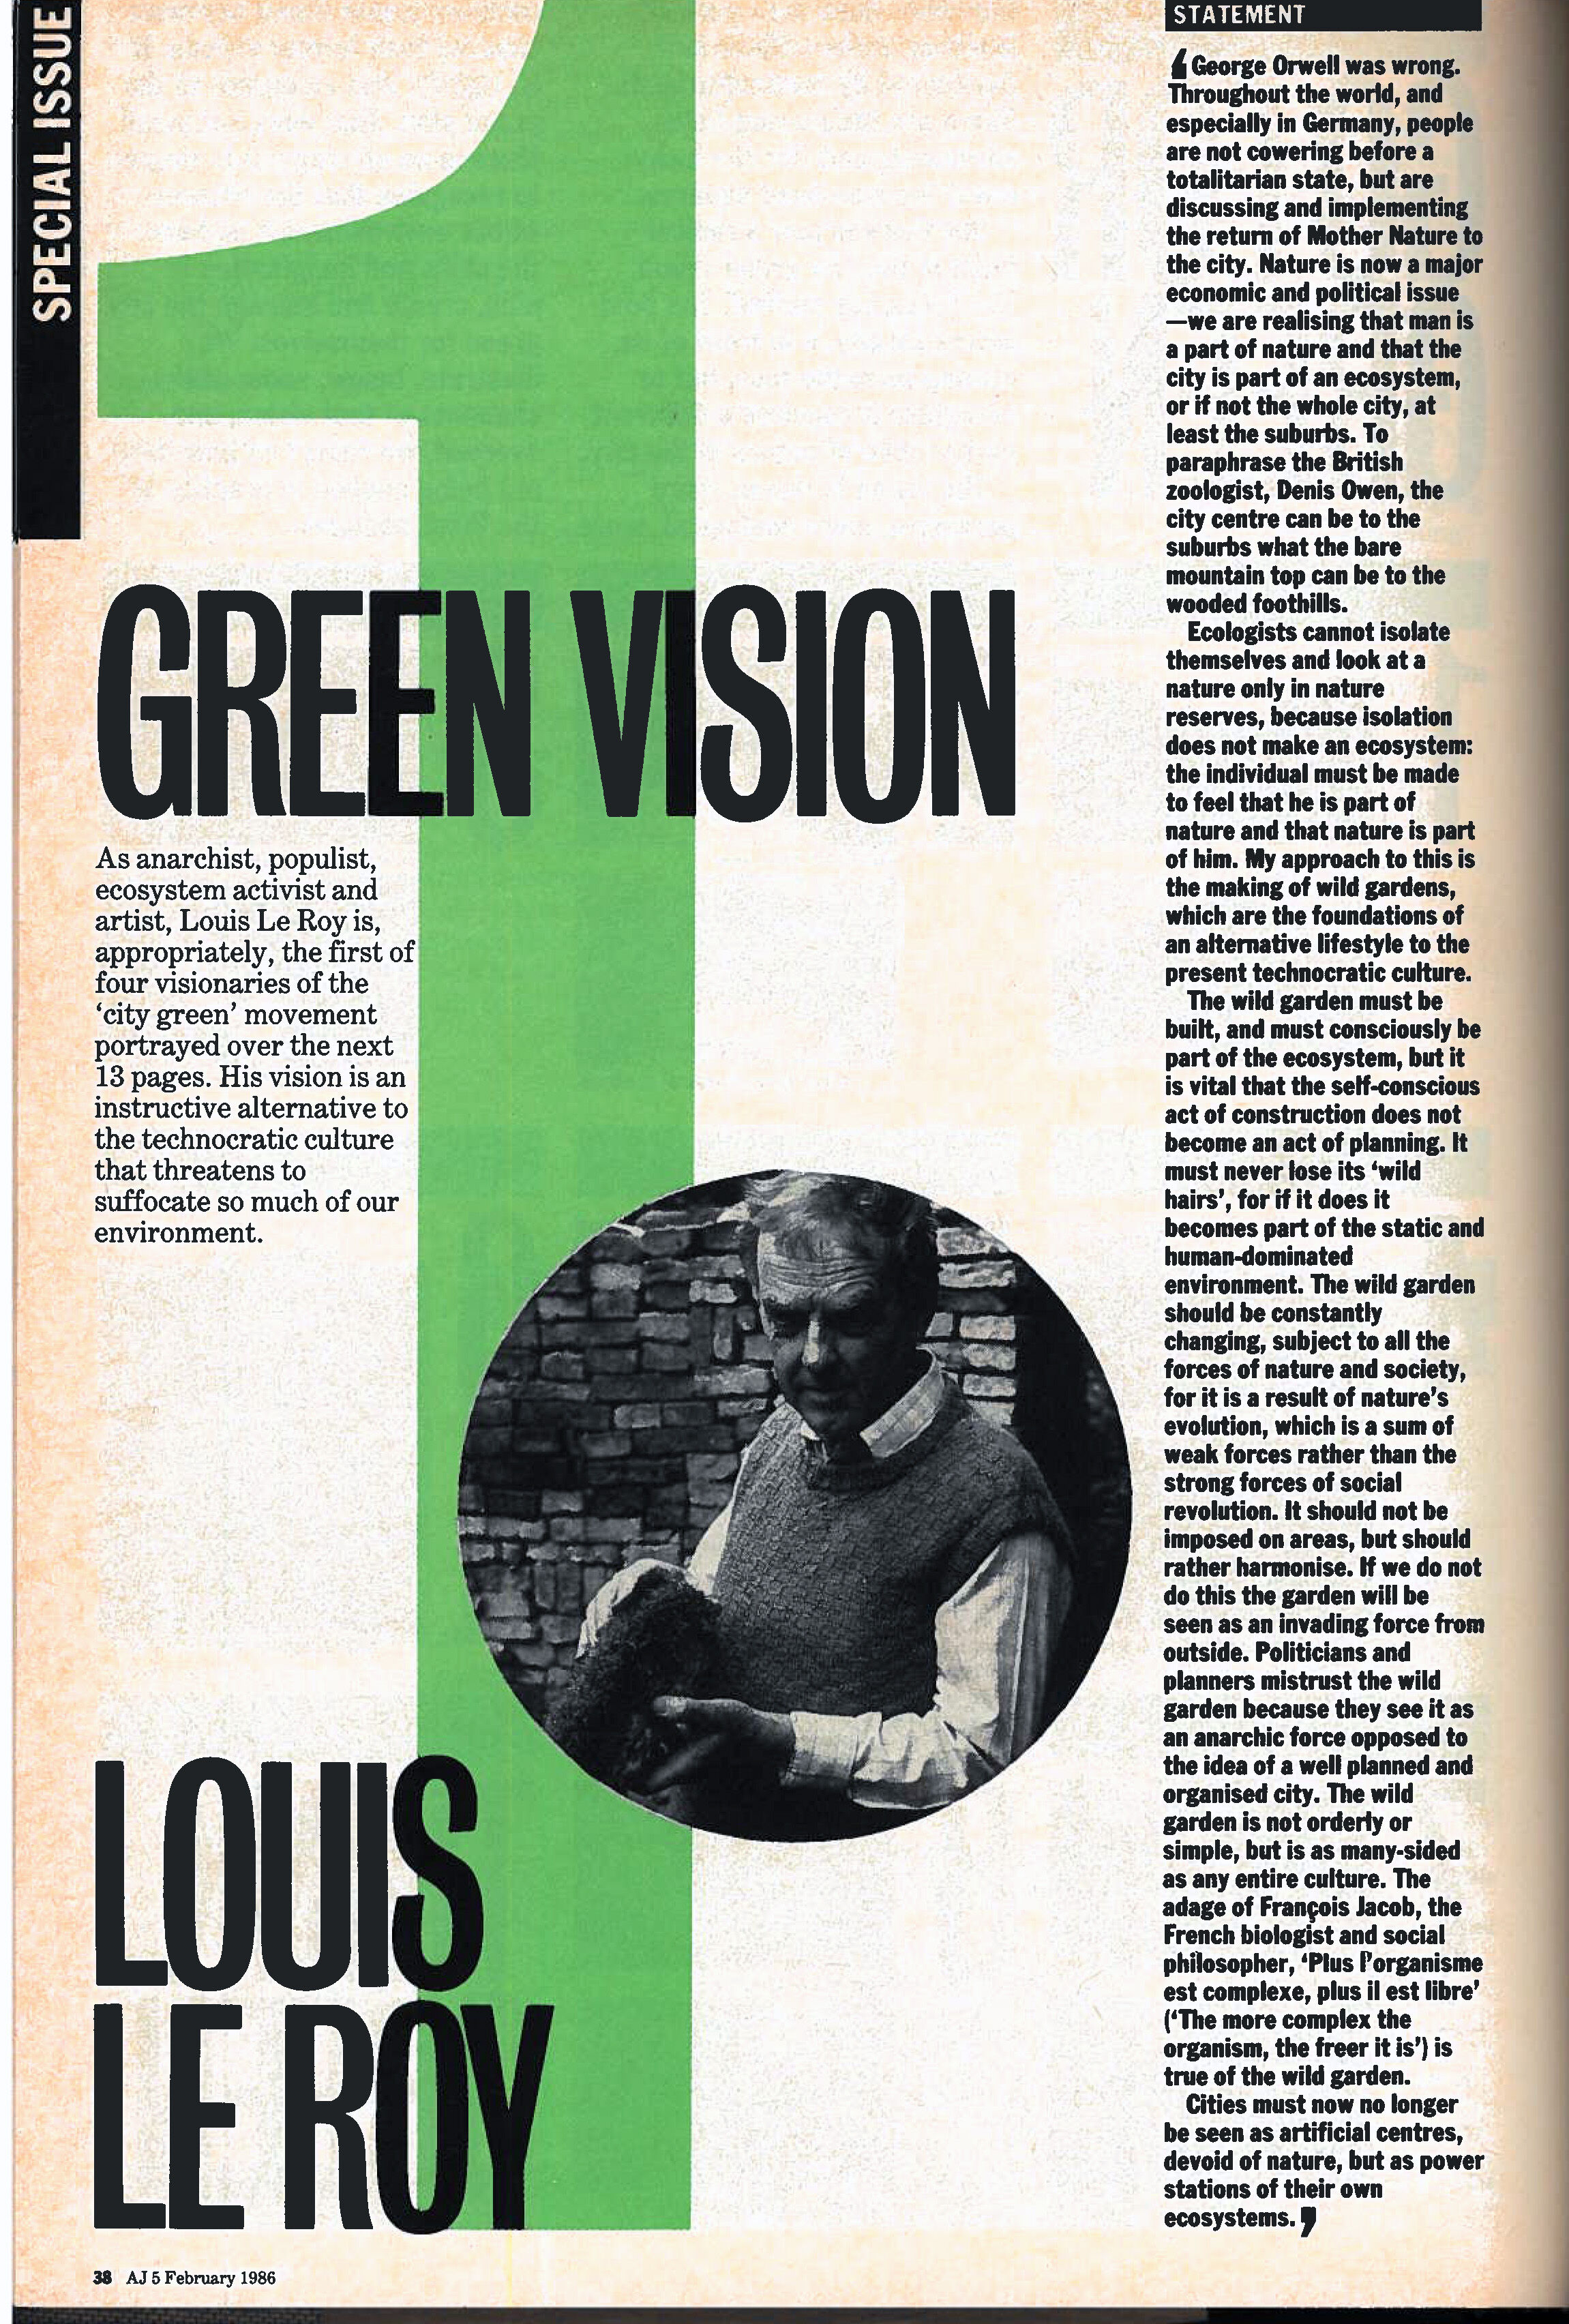 Green vision 1